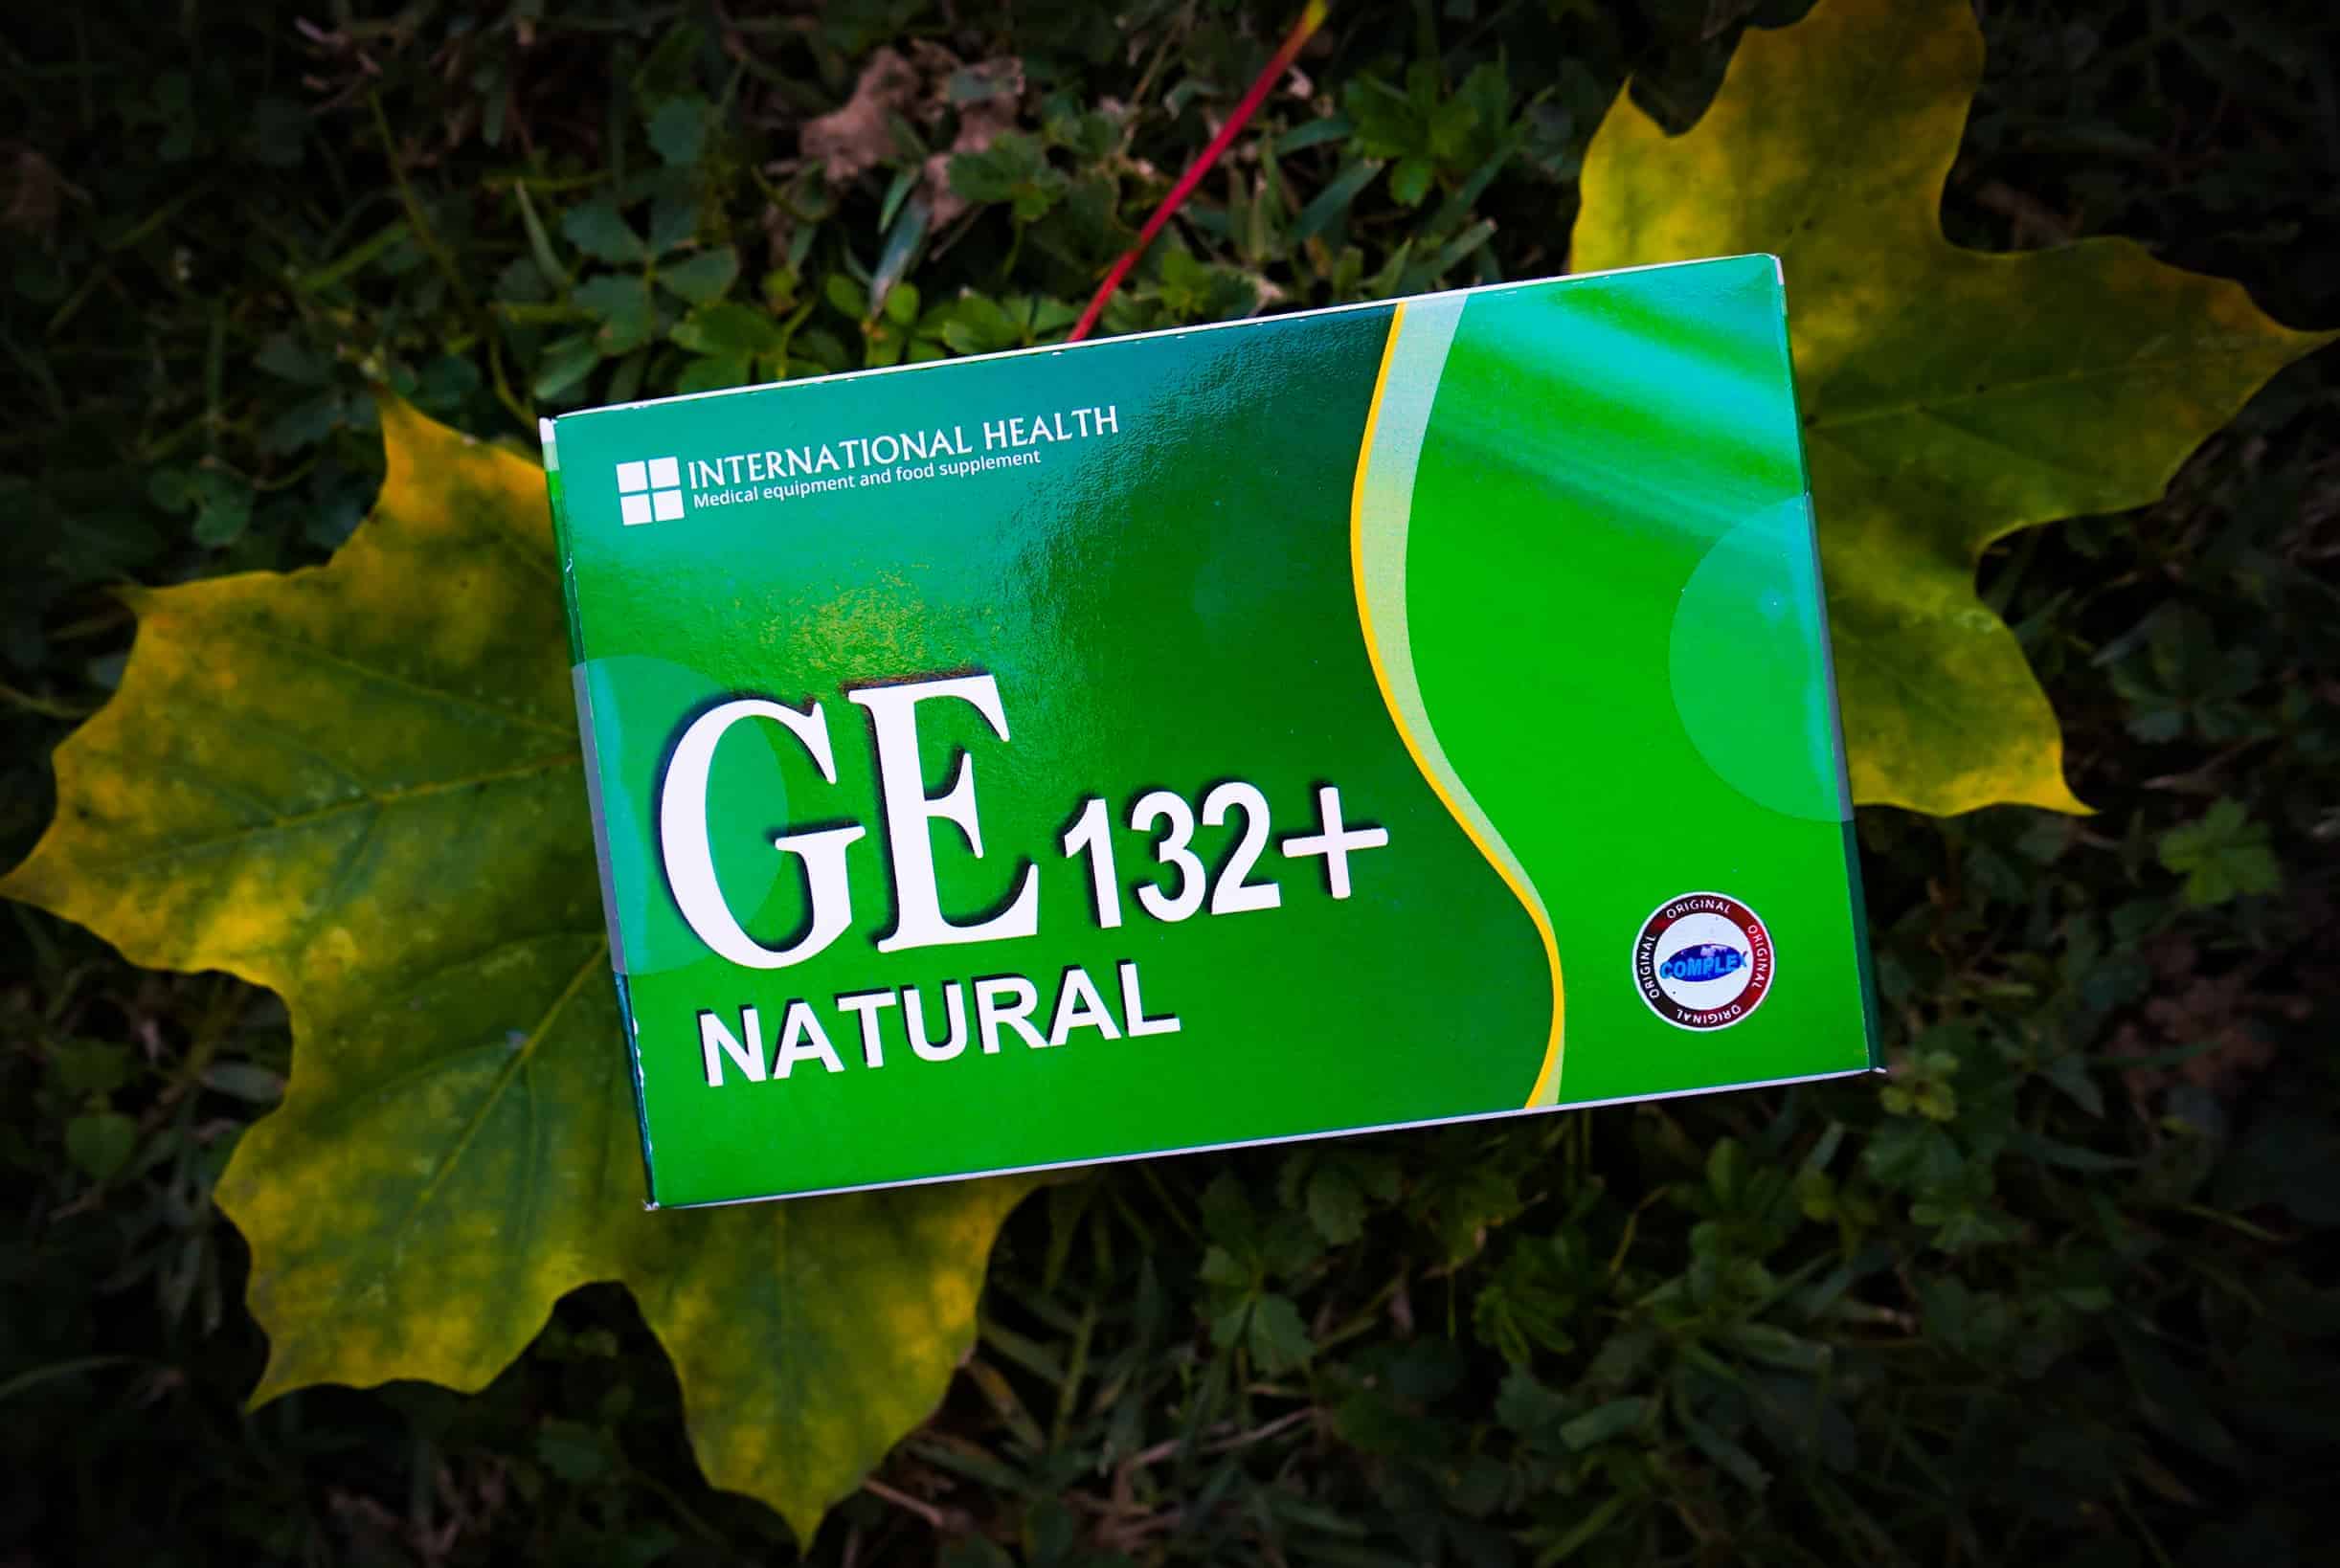 GE132 +, 60 Kapseln, Leistungsstarker Komplex zur Verbesserung der Gesundheit mit Antioxidantien